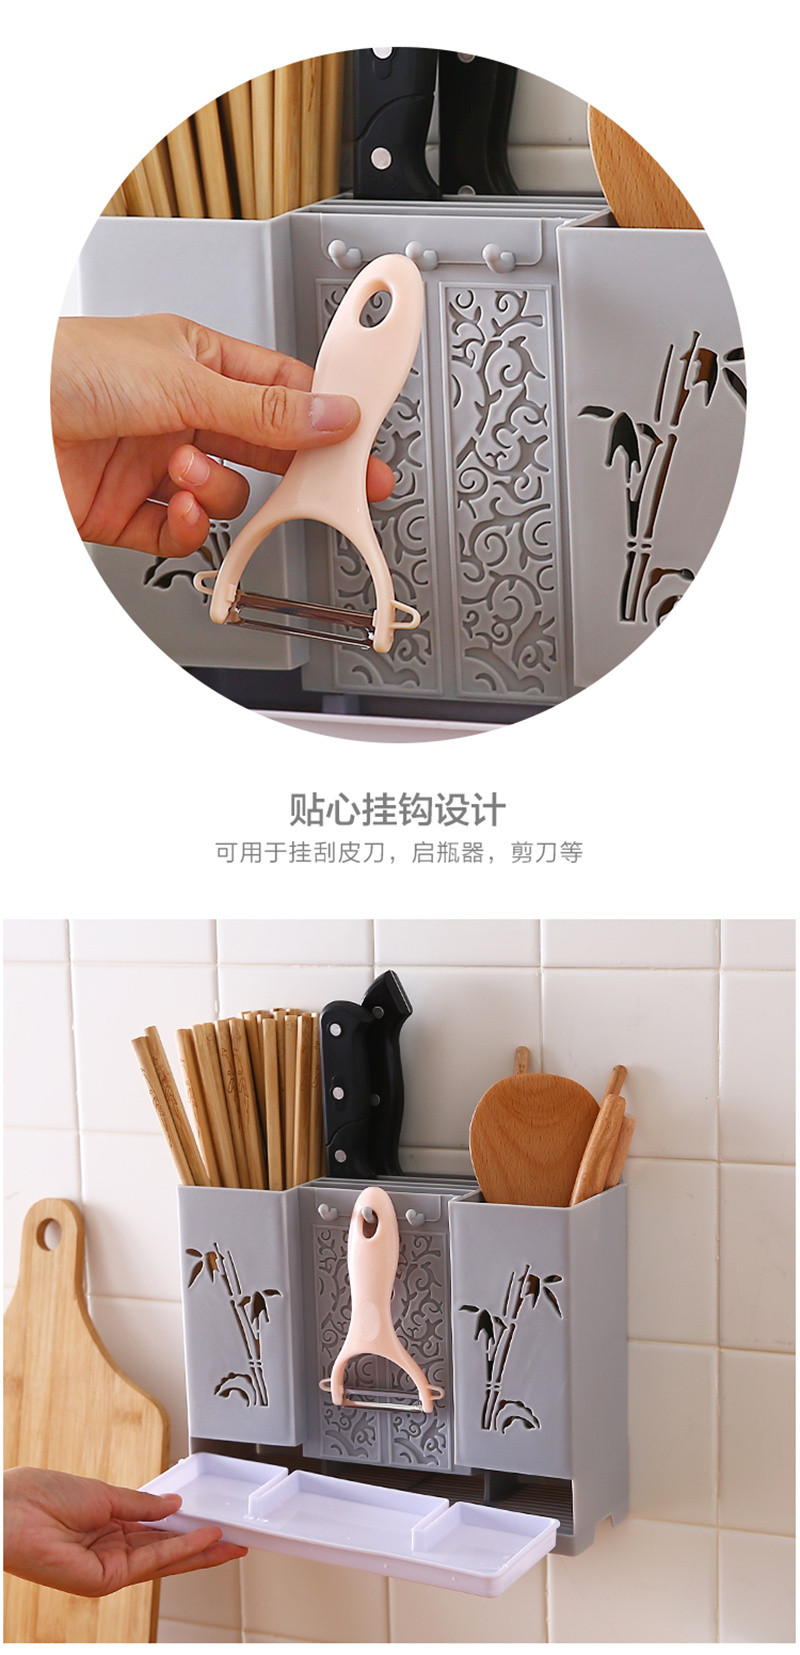 洛港 筷子筒壁挂式筷笼子沥水置物架托家用筷笼筷筒厨房餐具勺子/个